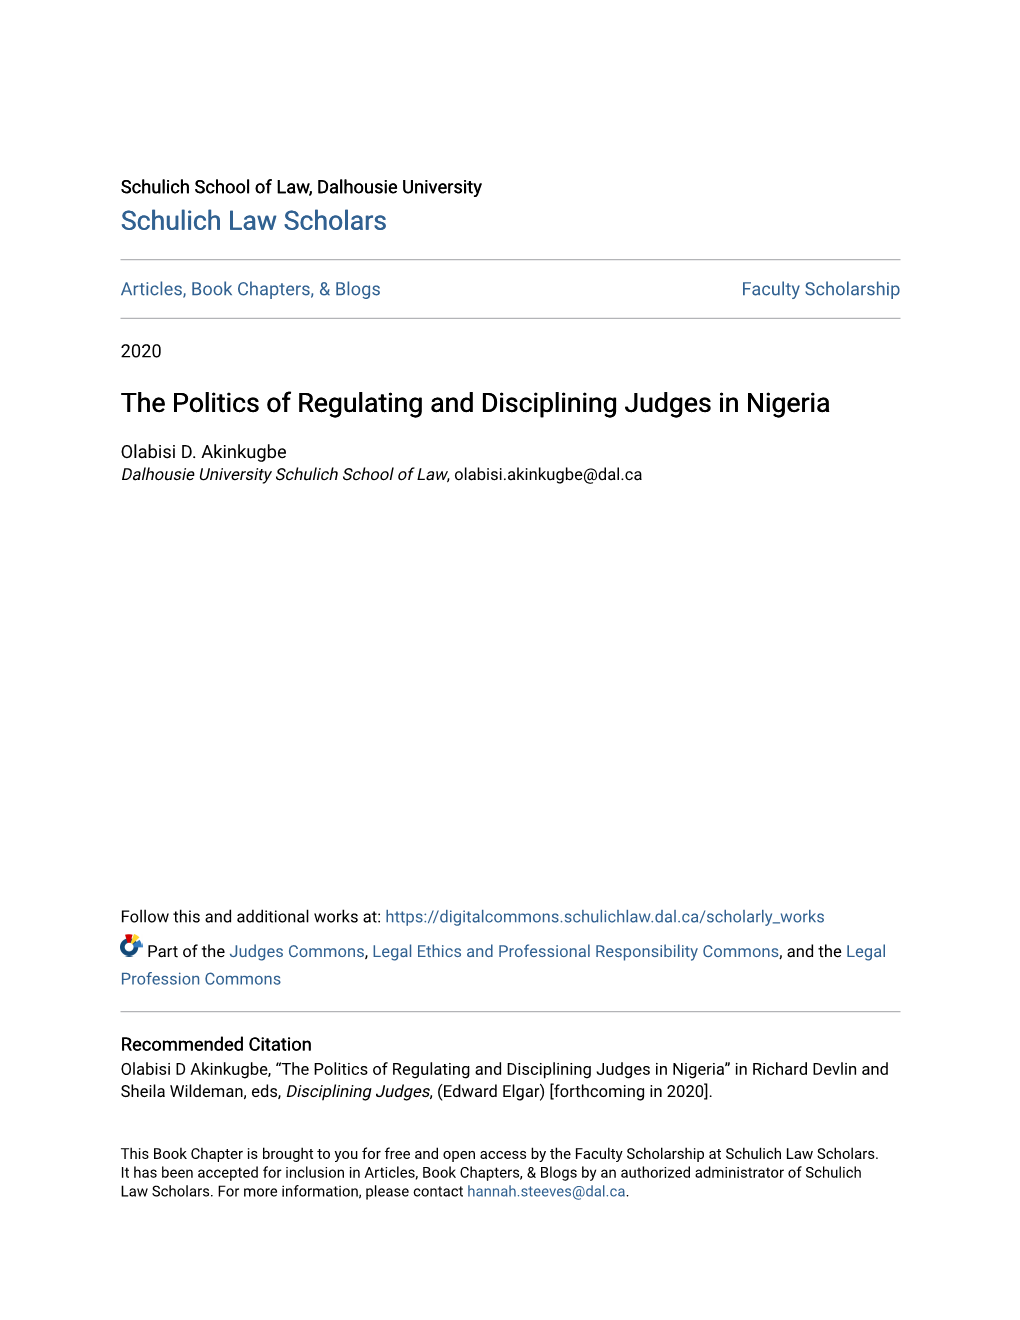 The Politics of Regulating and Disciplining Judges in Nigeria